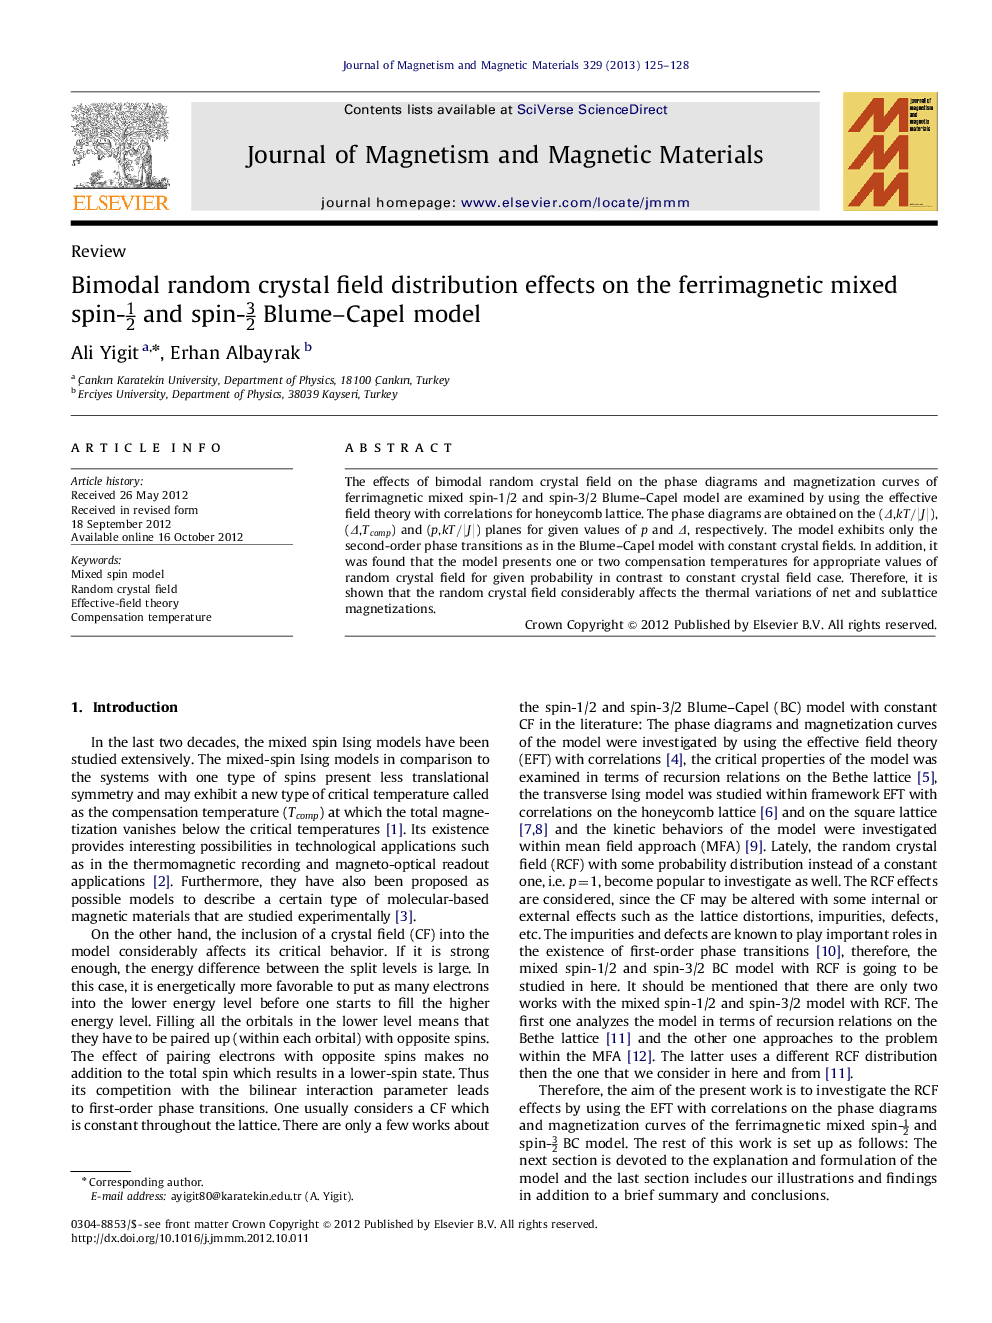 اثرات توزیع میدان کریستال تصادفی دوبعدی بر مدل اسپین-12 و اسپین-32 بلوم کاپل مخلوط فریمغناطیس 